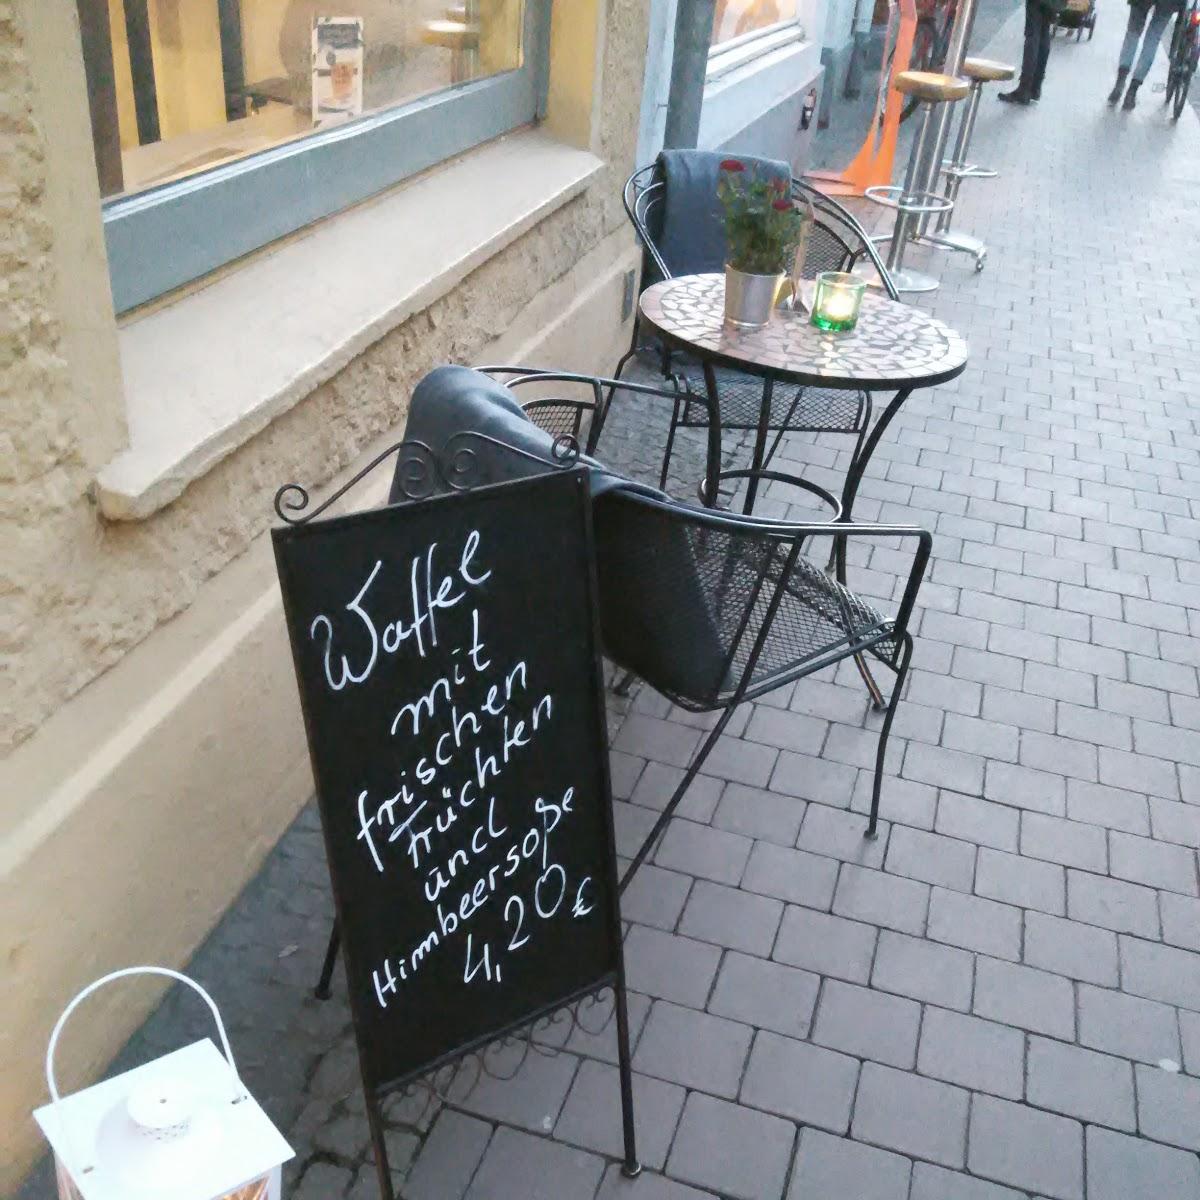 Restaurant "Kleines Waffelhaus" in Lübeck